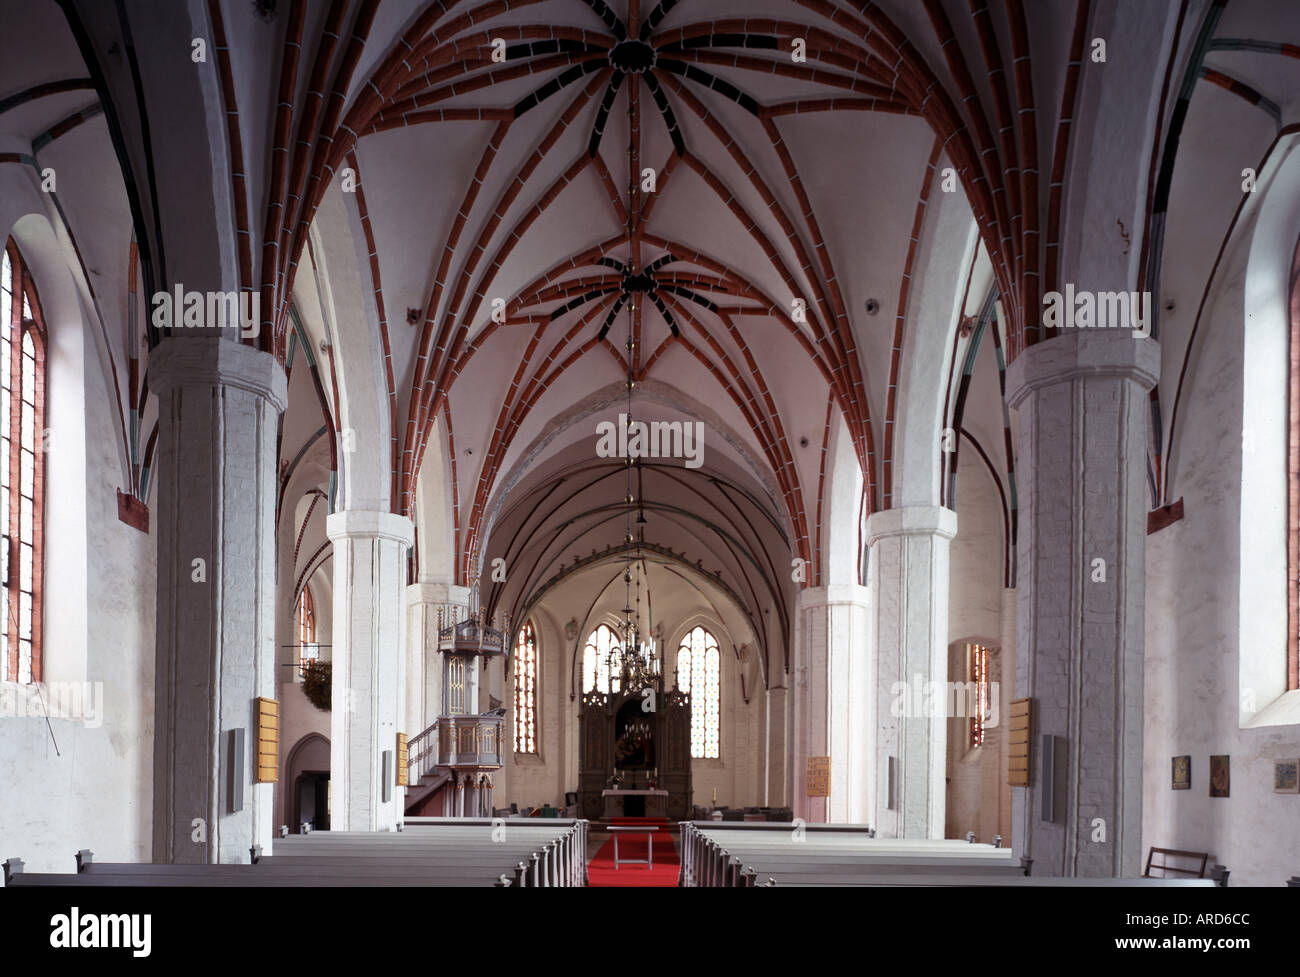 Angermünde, Kirche di St. Marien, Innenansicht Richtung Osten Foto Stock